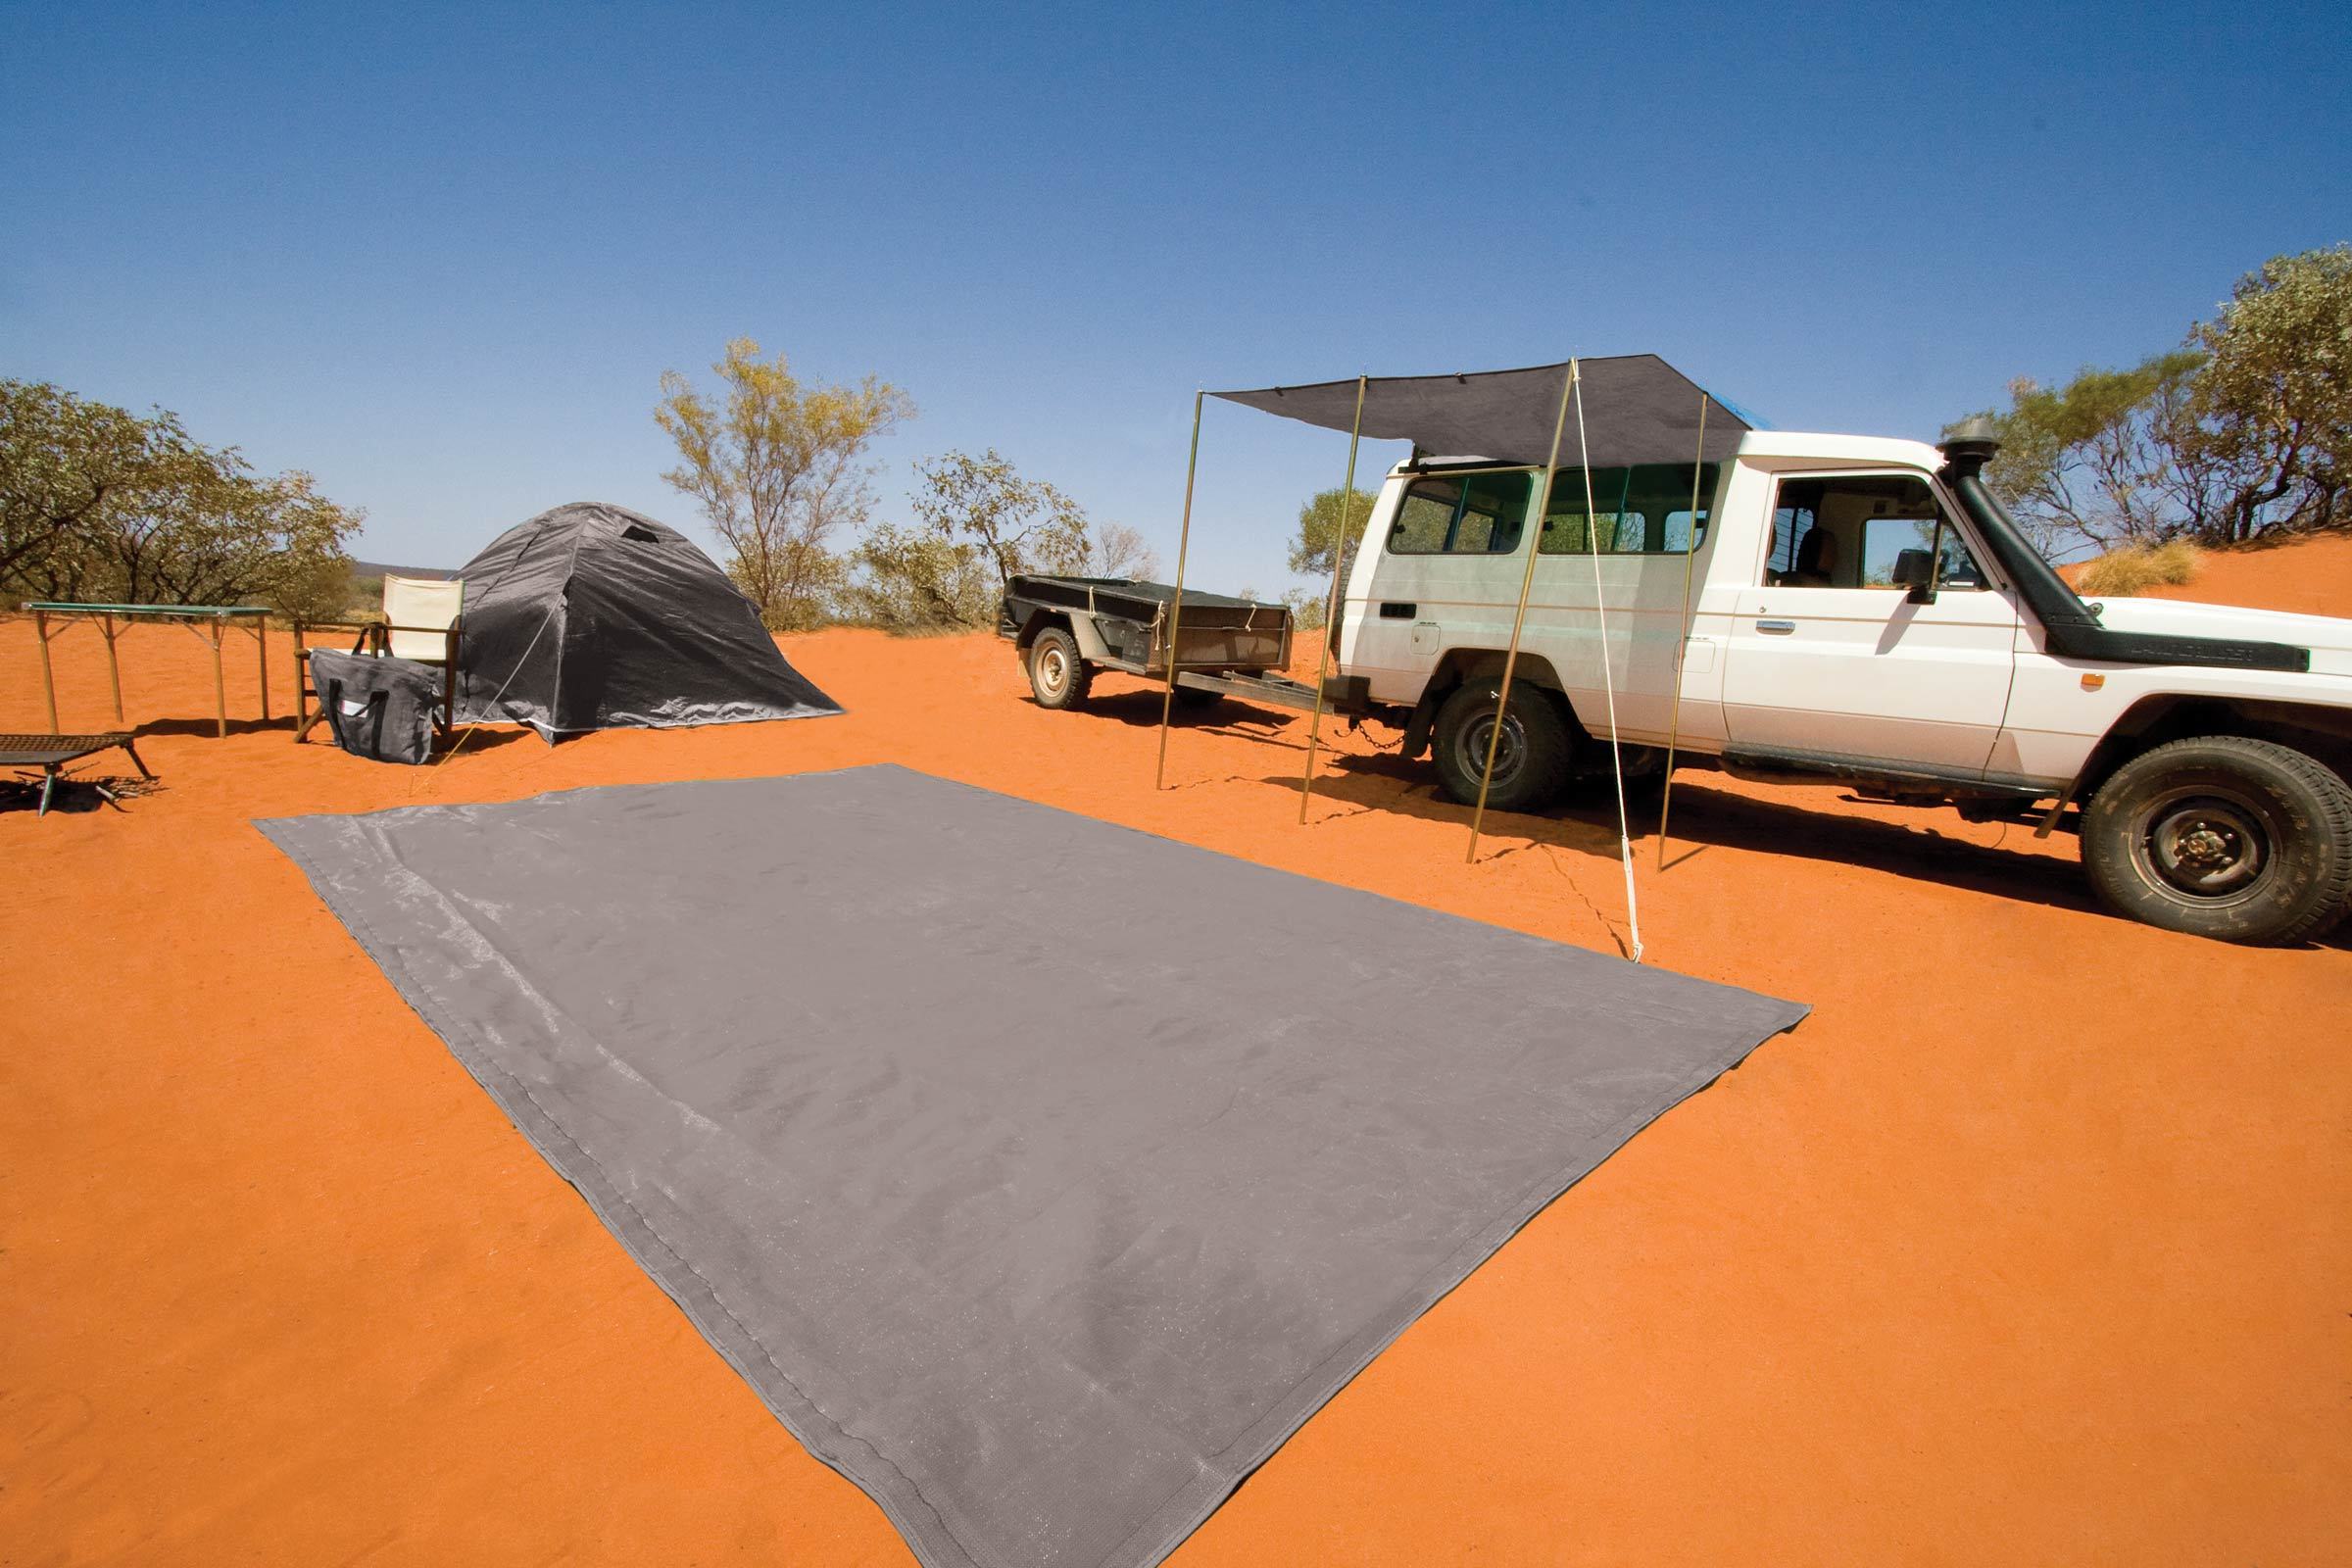 camping_caravan_heavy_duty_mat_sand_dirt_Best_Mat_outdoor